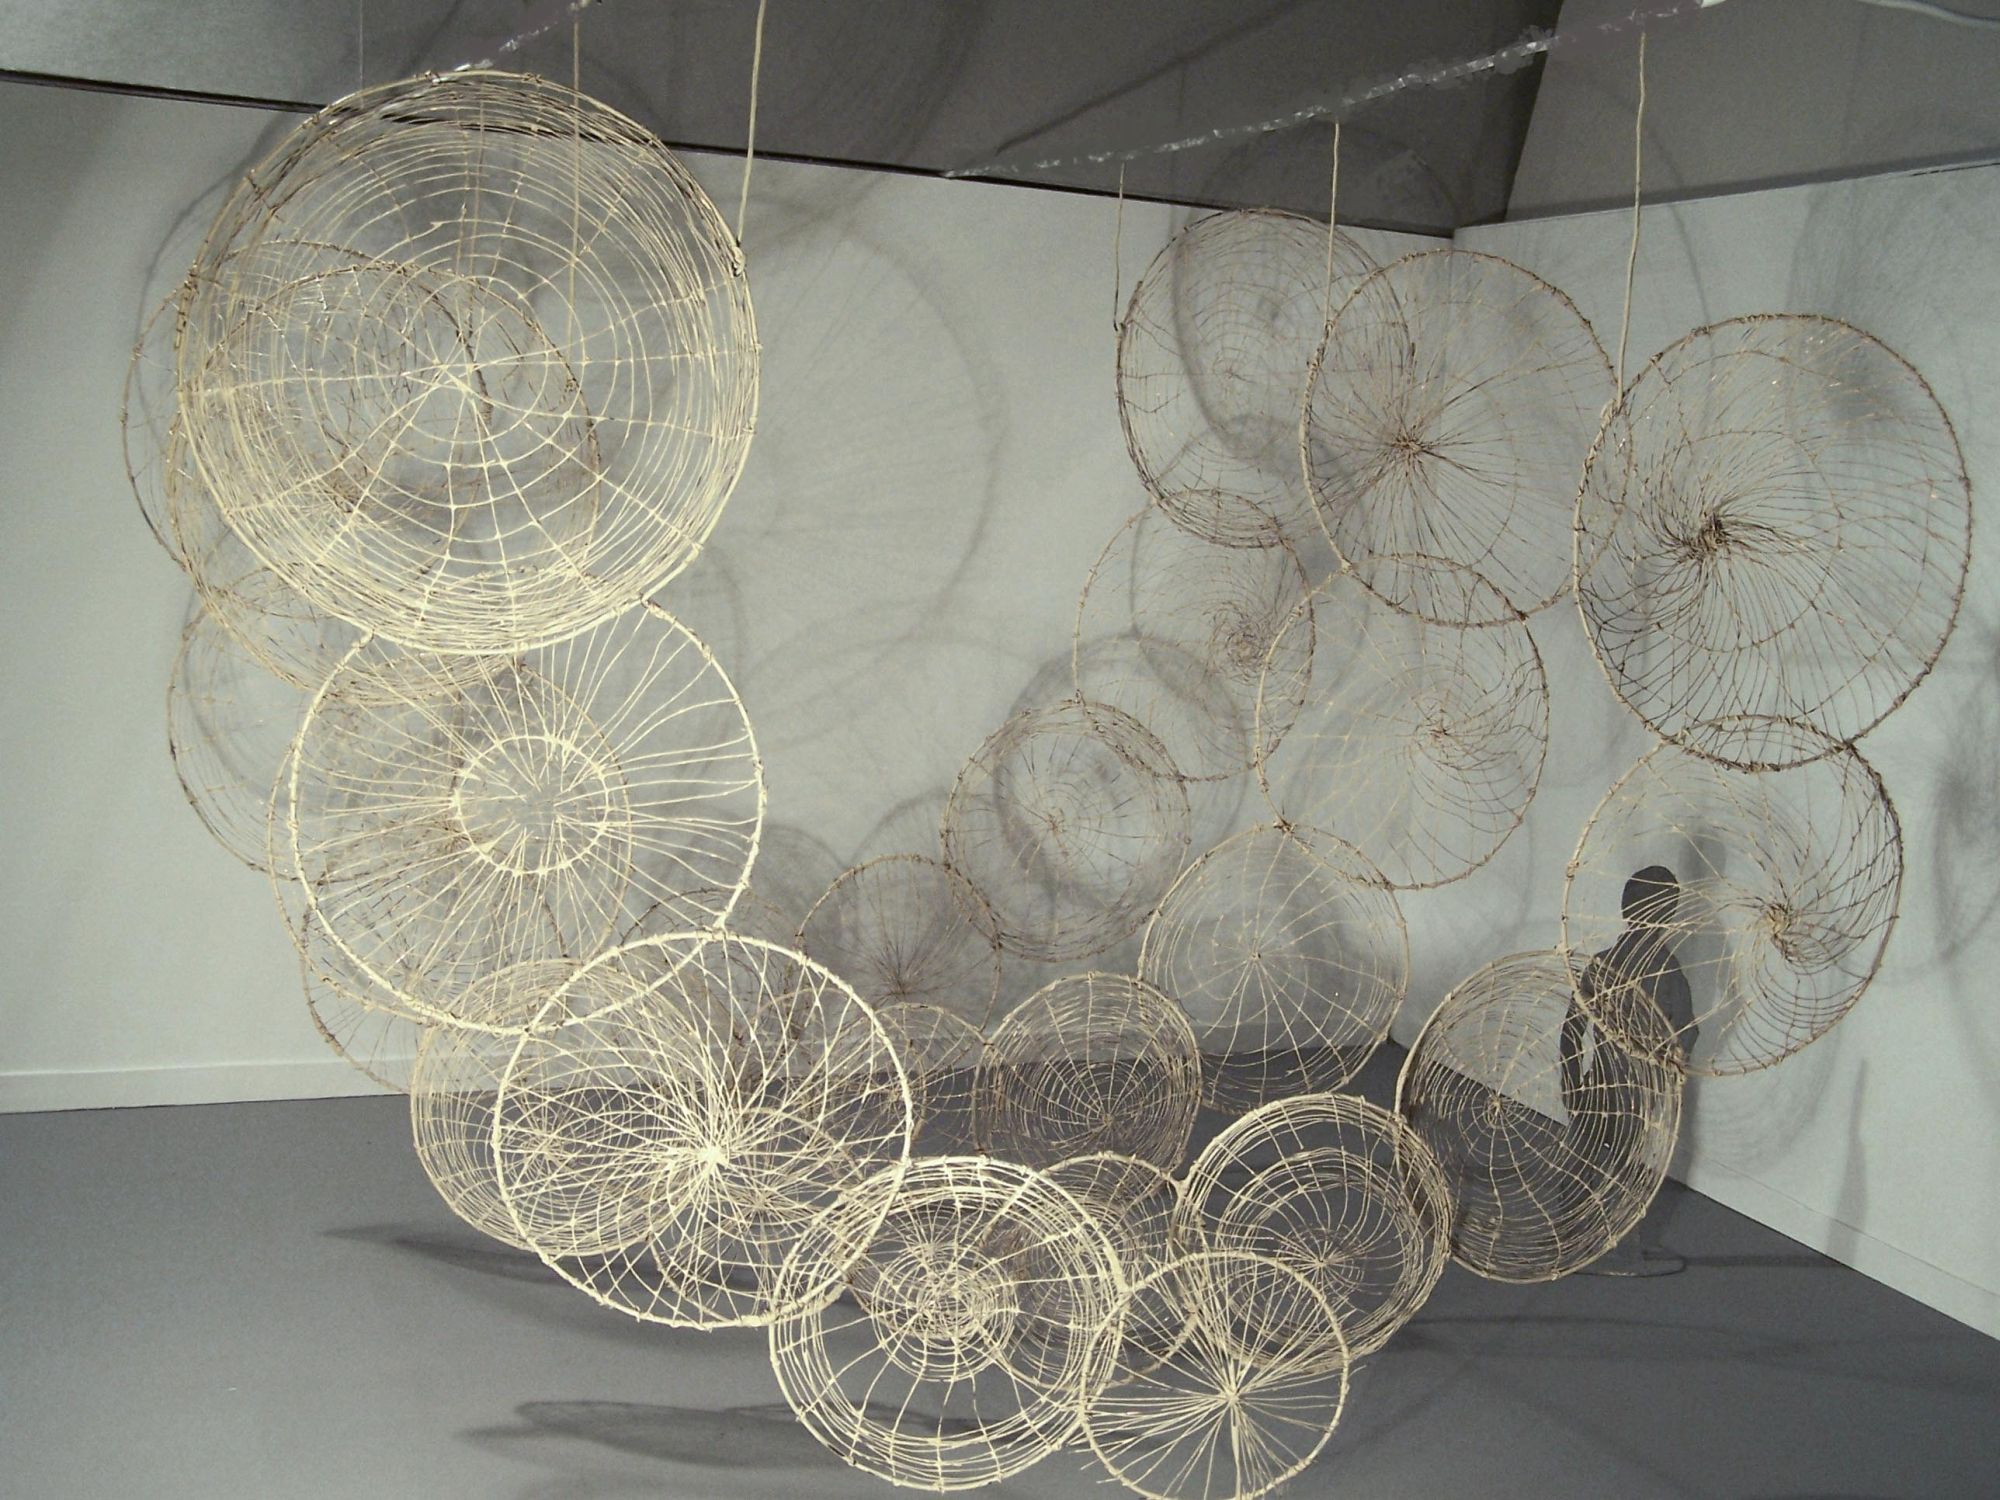 „Ogrody”, Mirosław Maszlanko, „Membrany”, 2015, obiekt przestrzenny: kręgi drewniane, trawa, wosk, wizualizacja pracy na wystawie (źródło: materiały prasowe)